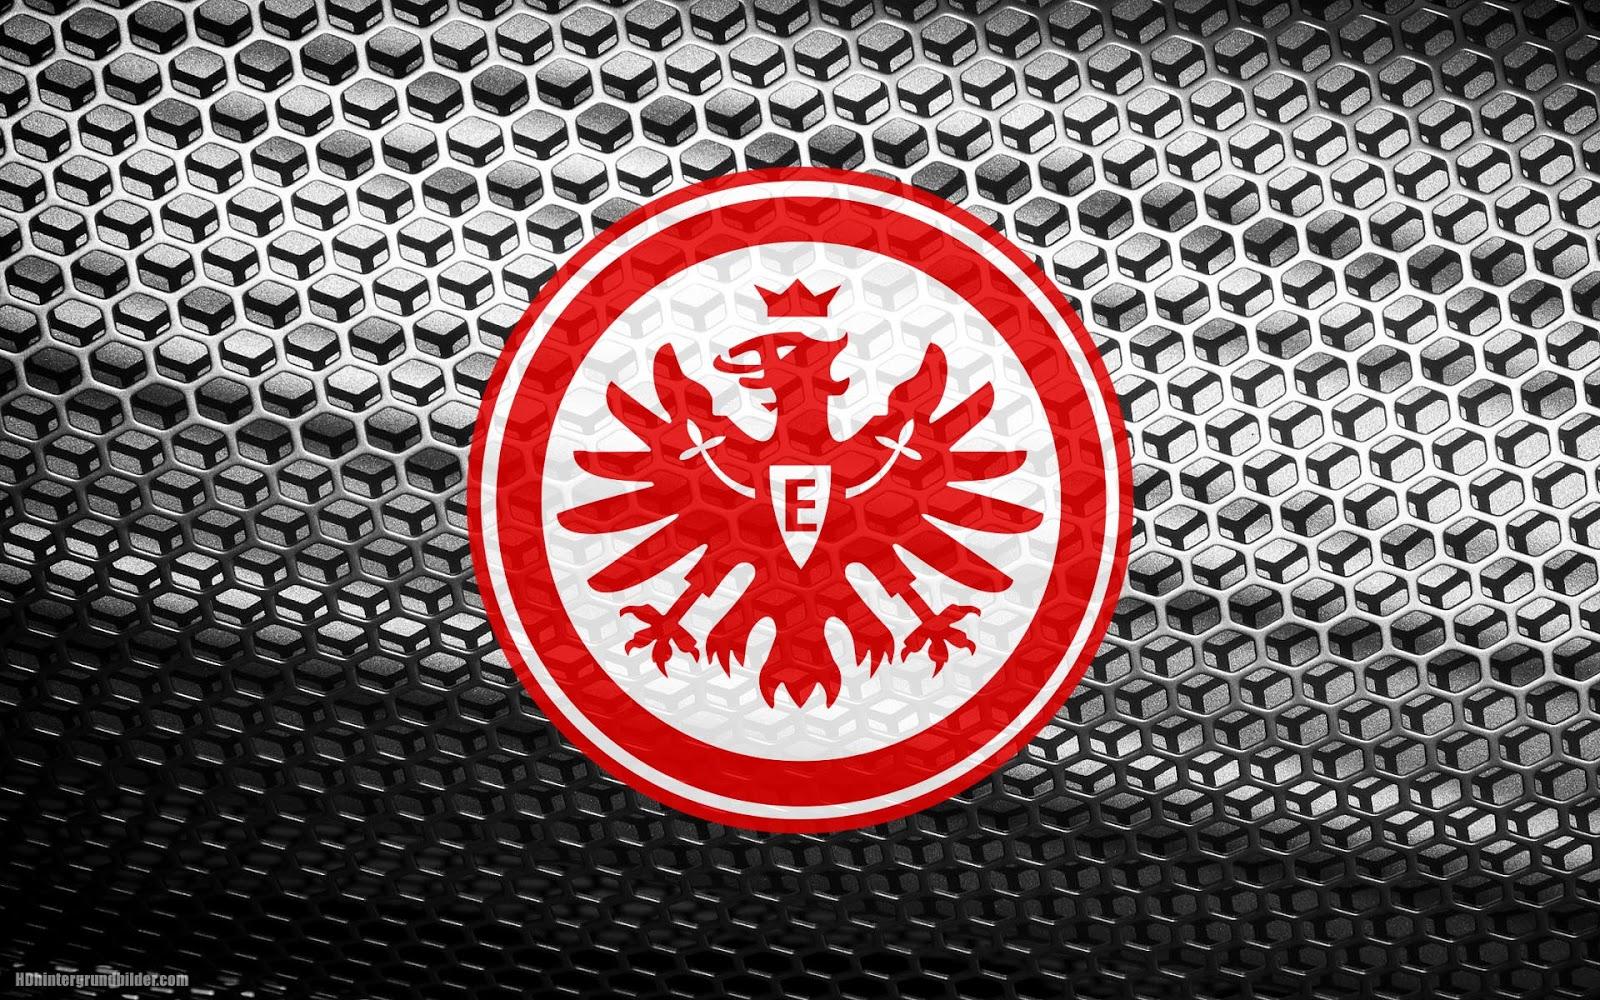 Eintracht Frankfurt wallpaper